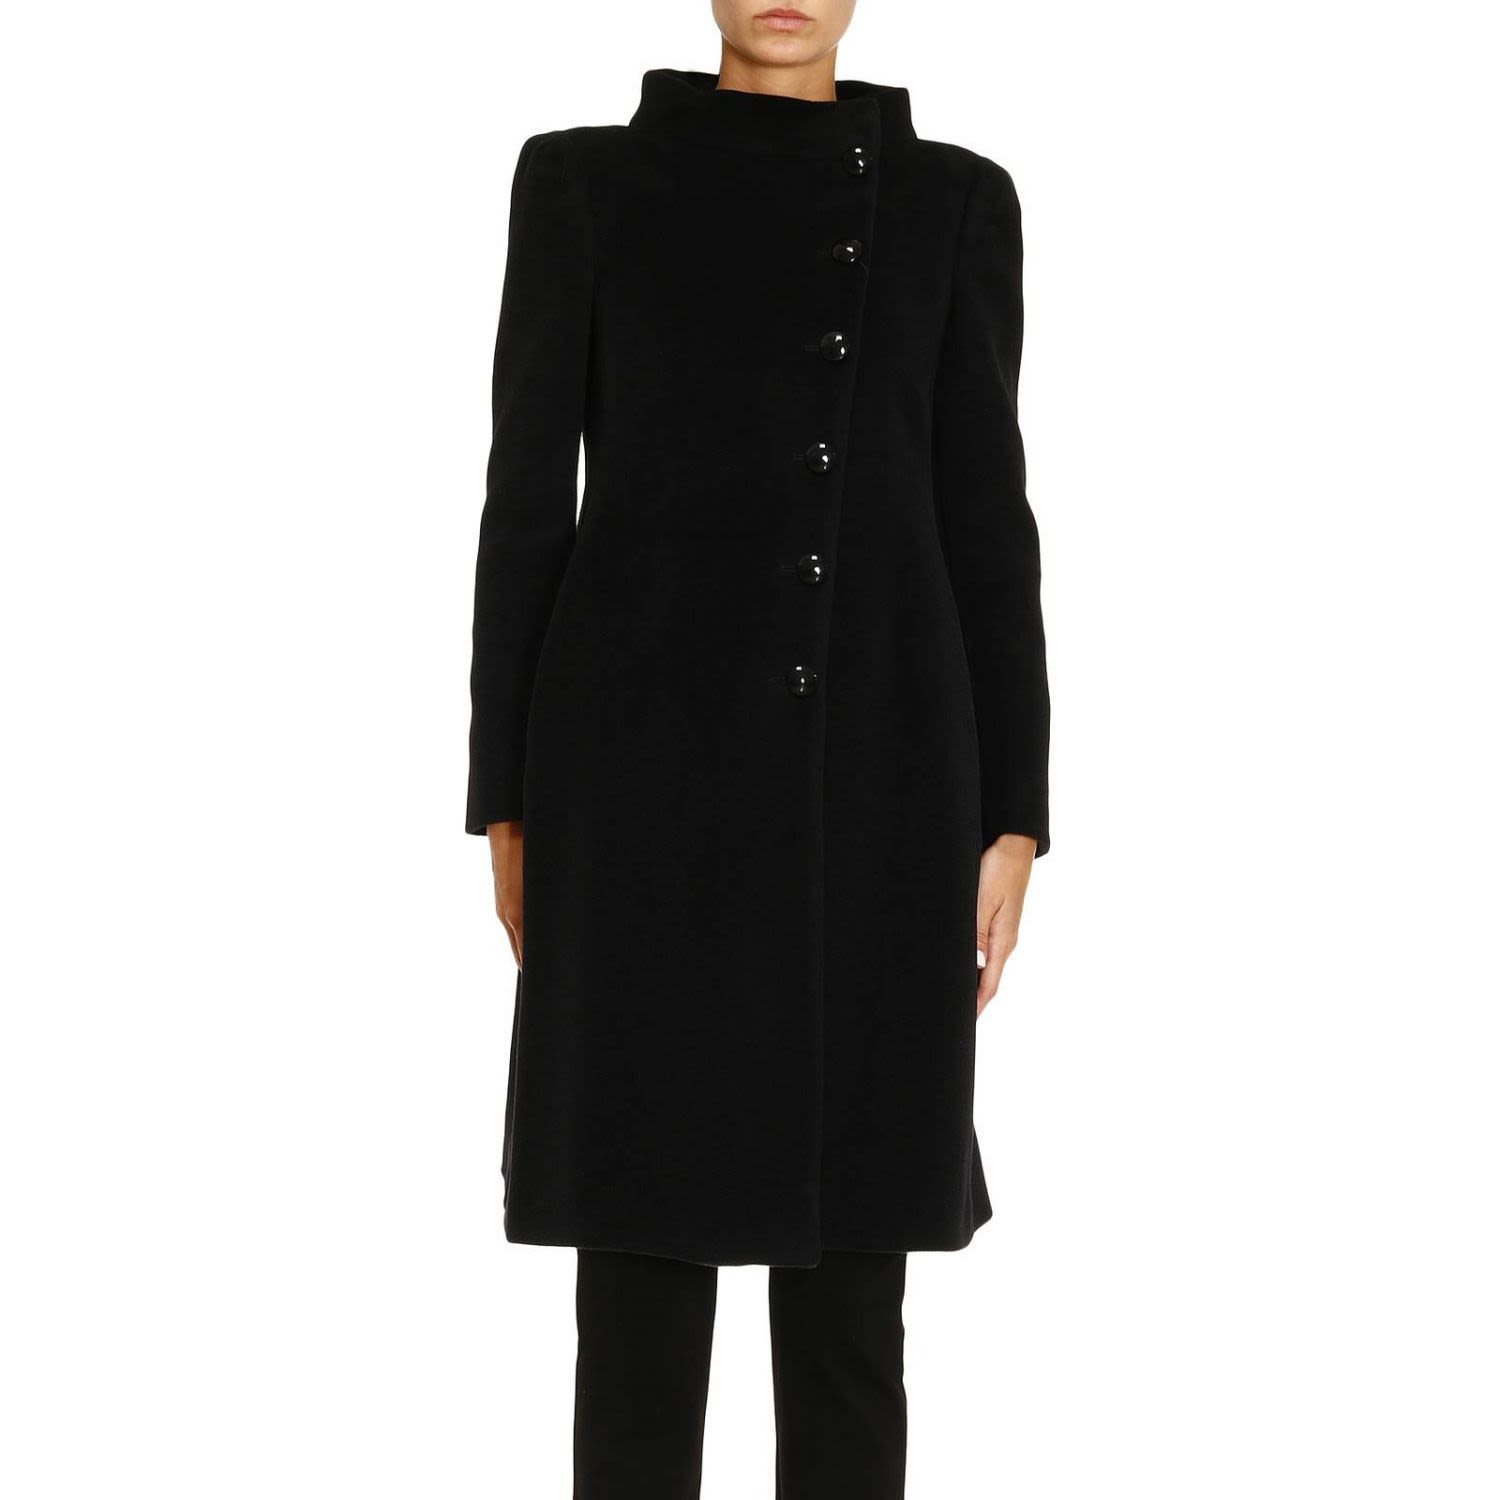 Armani Collezioni - Coat Coat Women Armani Collezioni - black, Women's ...